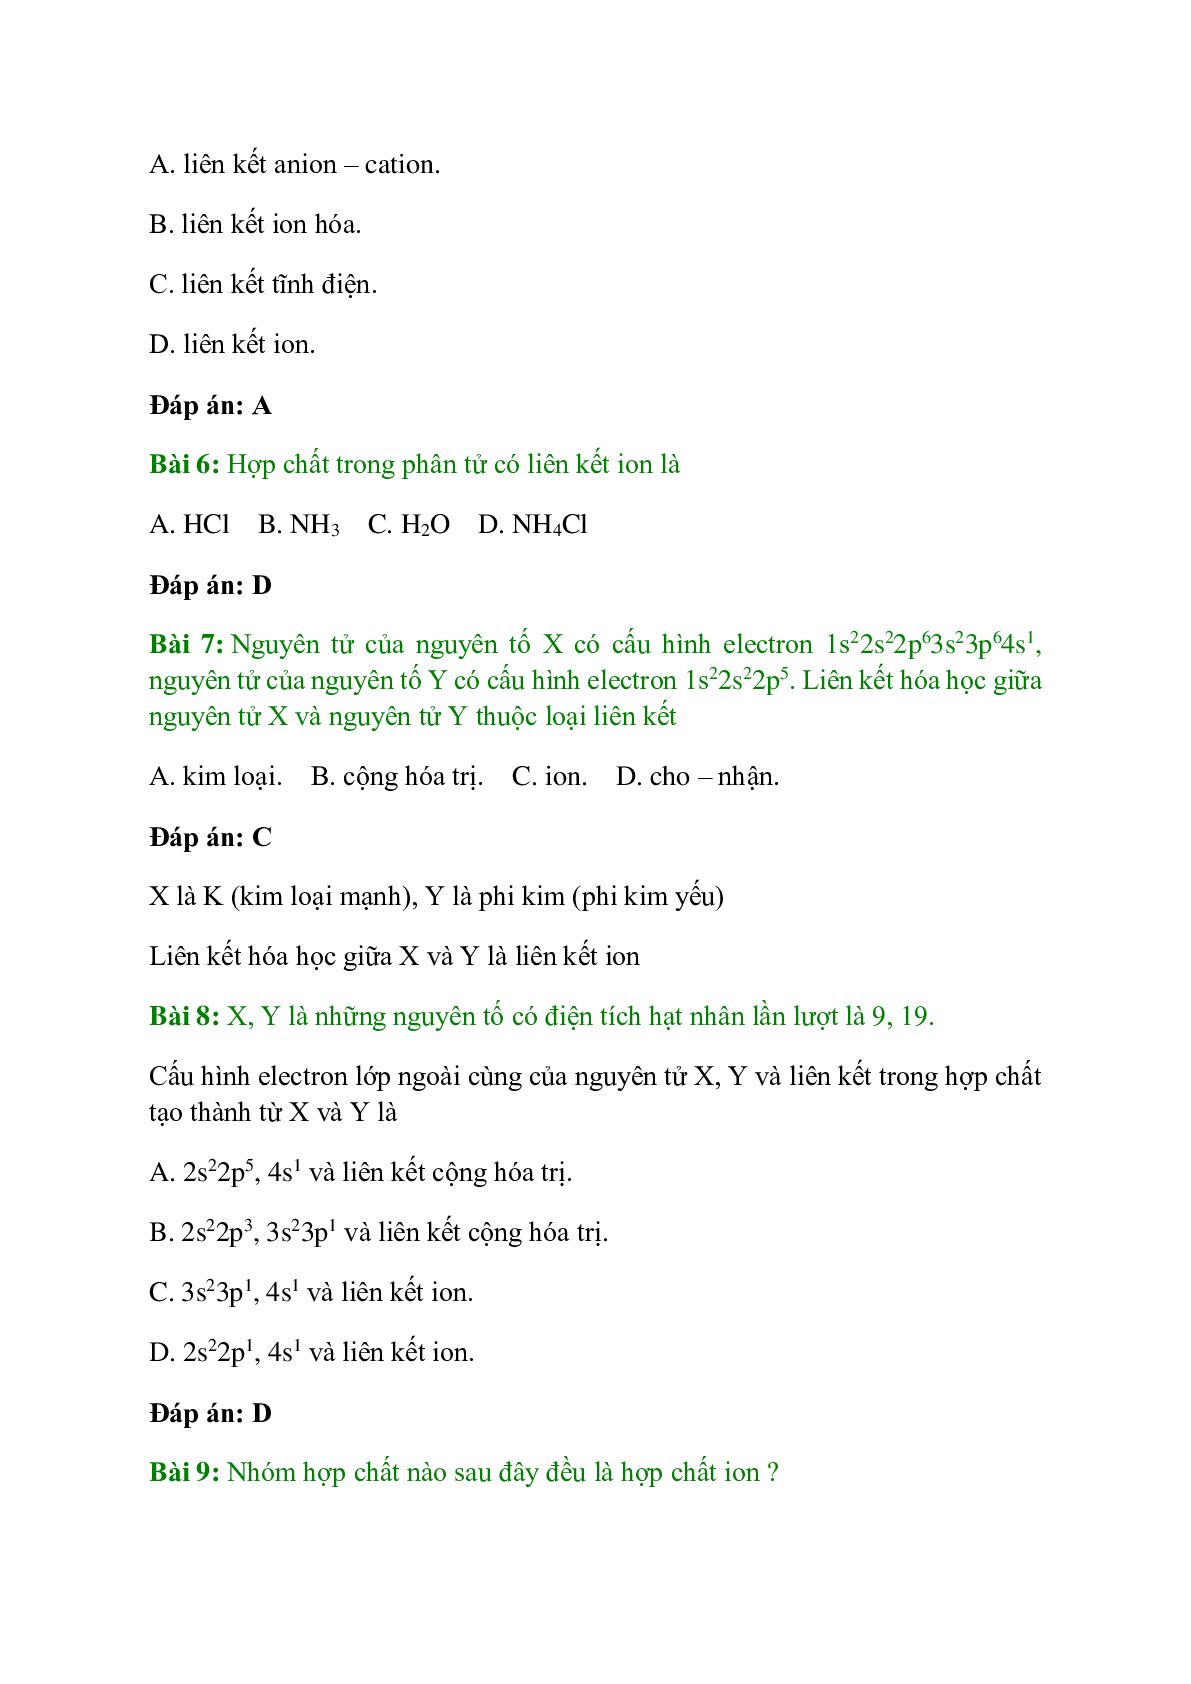 Trắc nghiệm Liên kết ion - Tinh thể ion có đáp án - Hóa học 10 (trang 2)